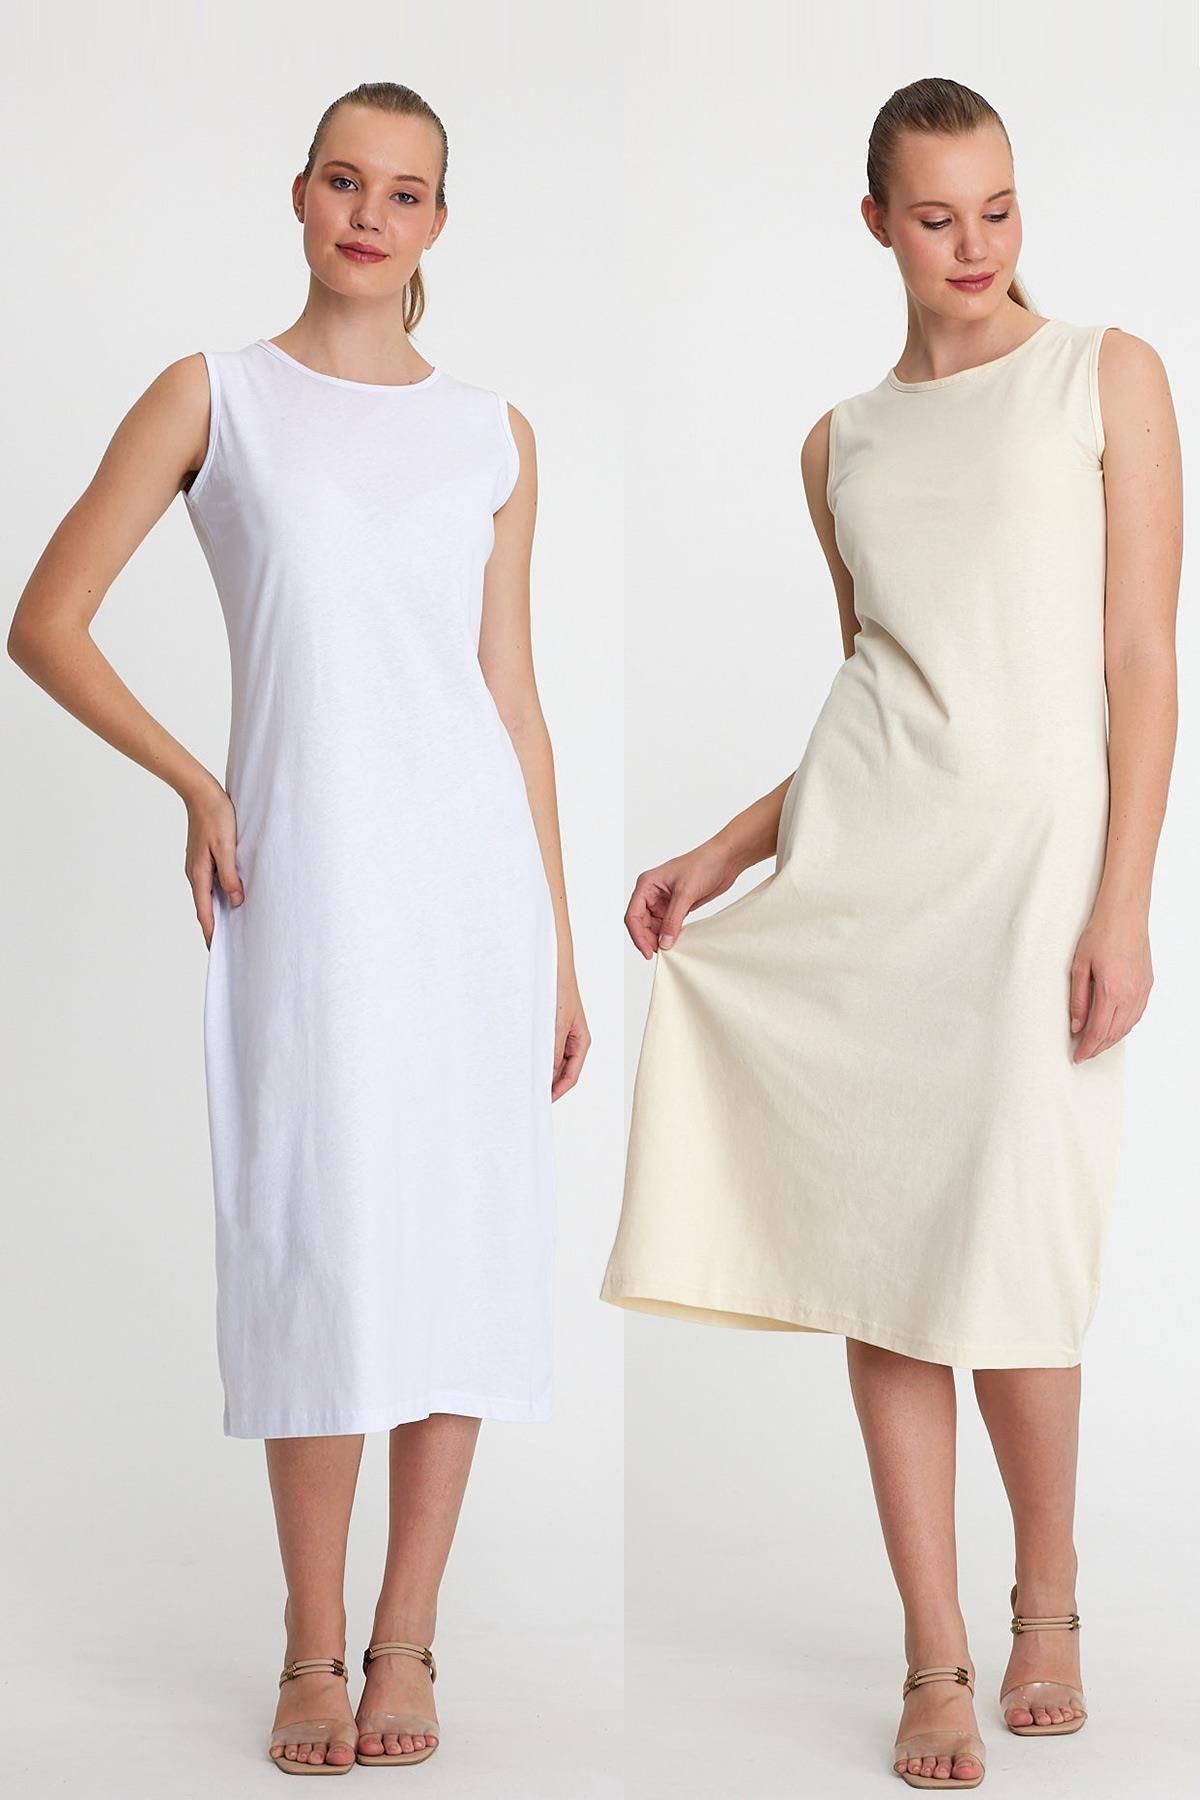 tessetür Bone diyarı Uzun Kolsuz Elbise Astarı Içlik Jüpon Kombinezon 2'li Set Ekru - Beyaz 2'li Set %100 Polyester